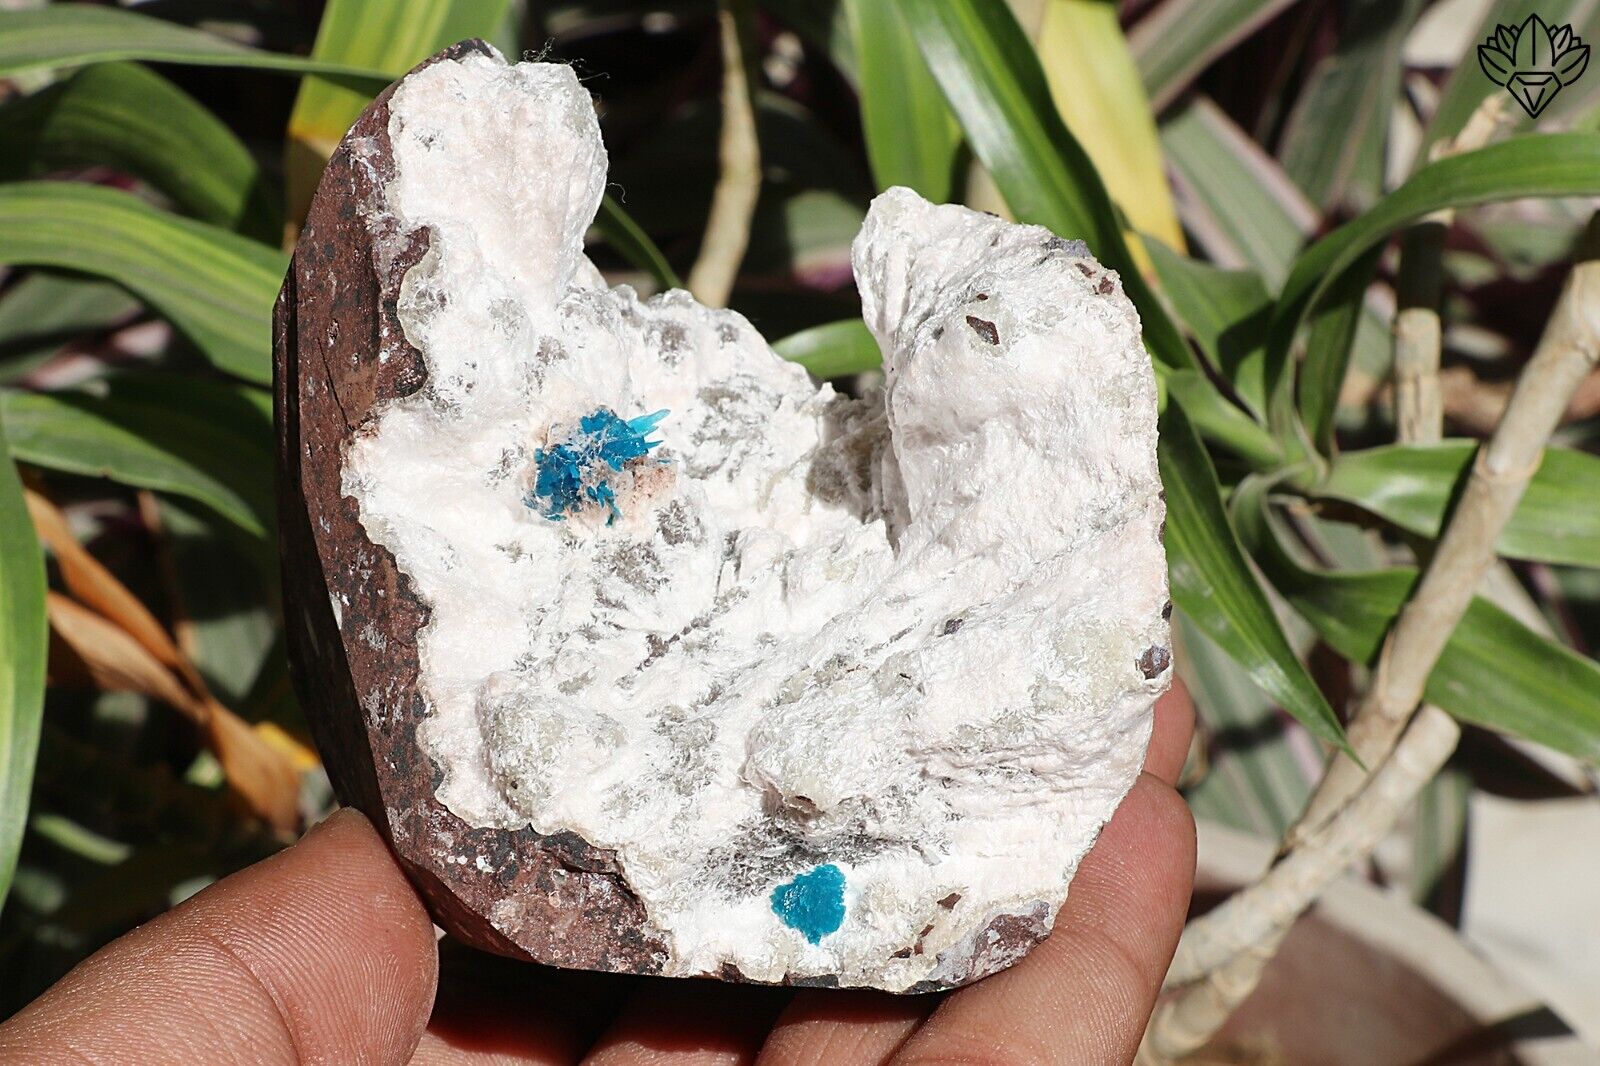 280 gm Amezing Natural Cavansite crystal flower Heulandite base rough specimen